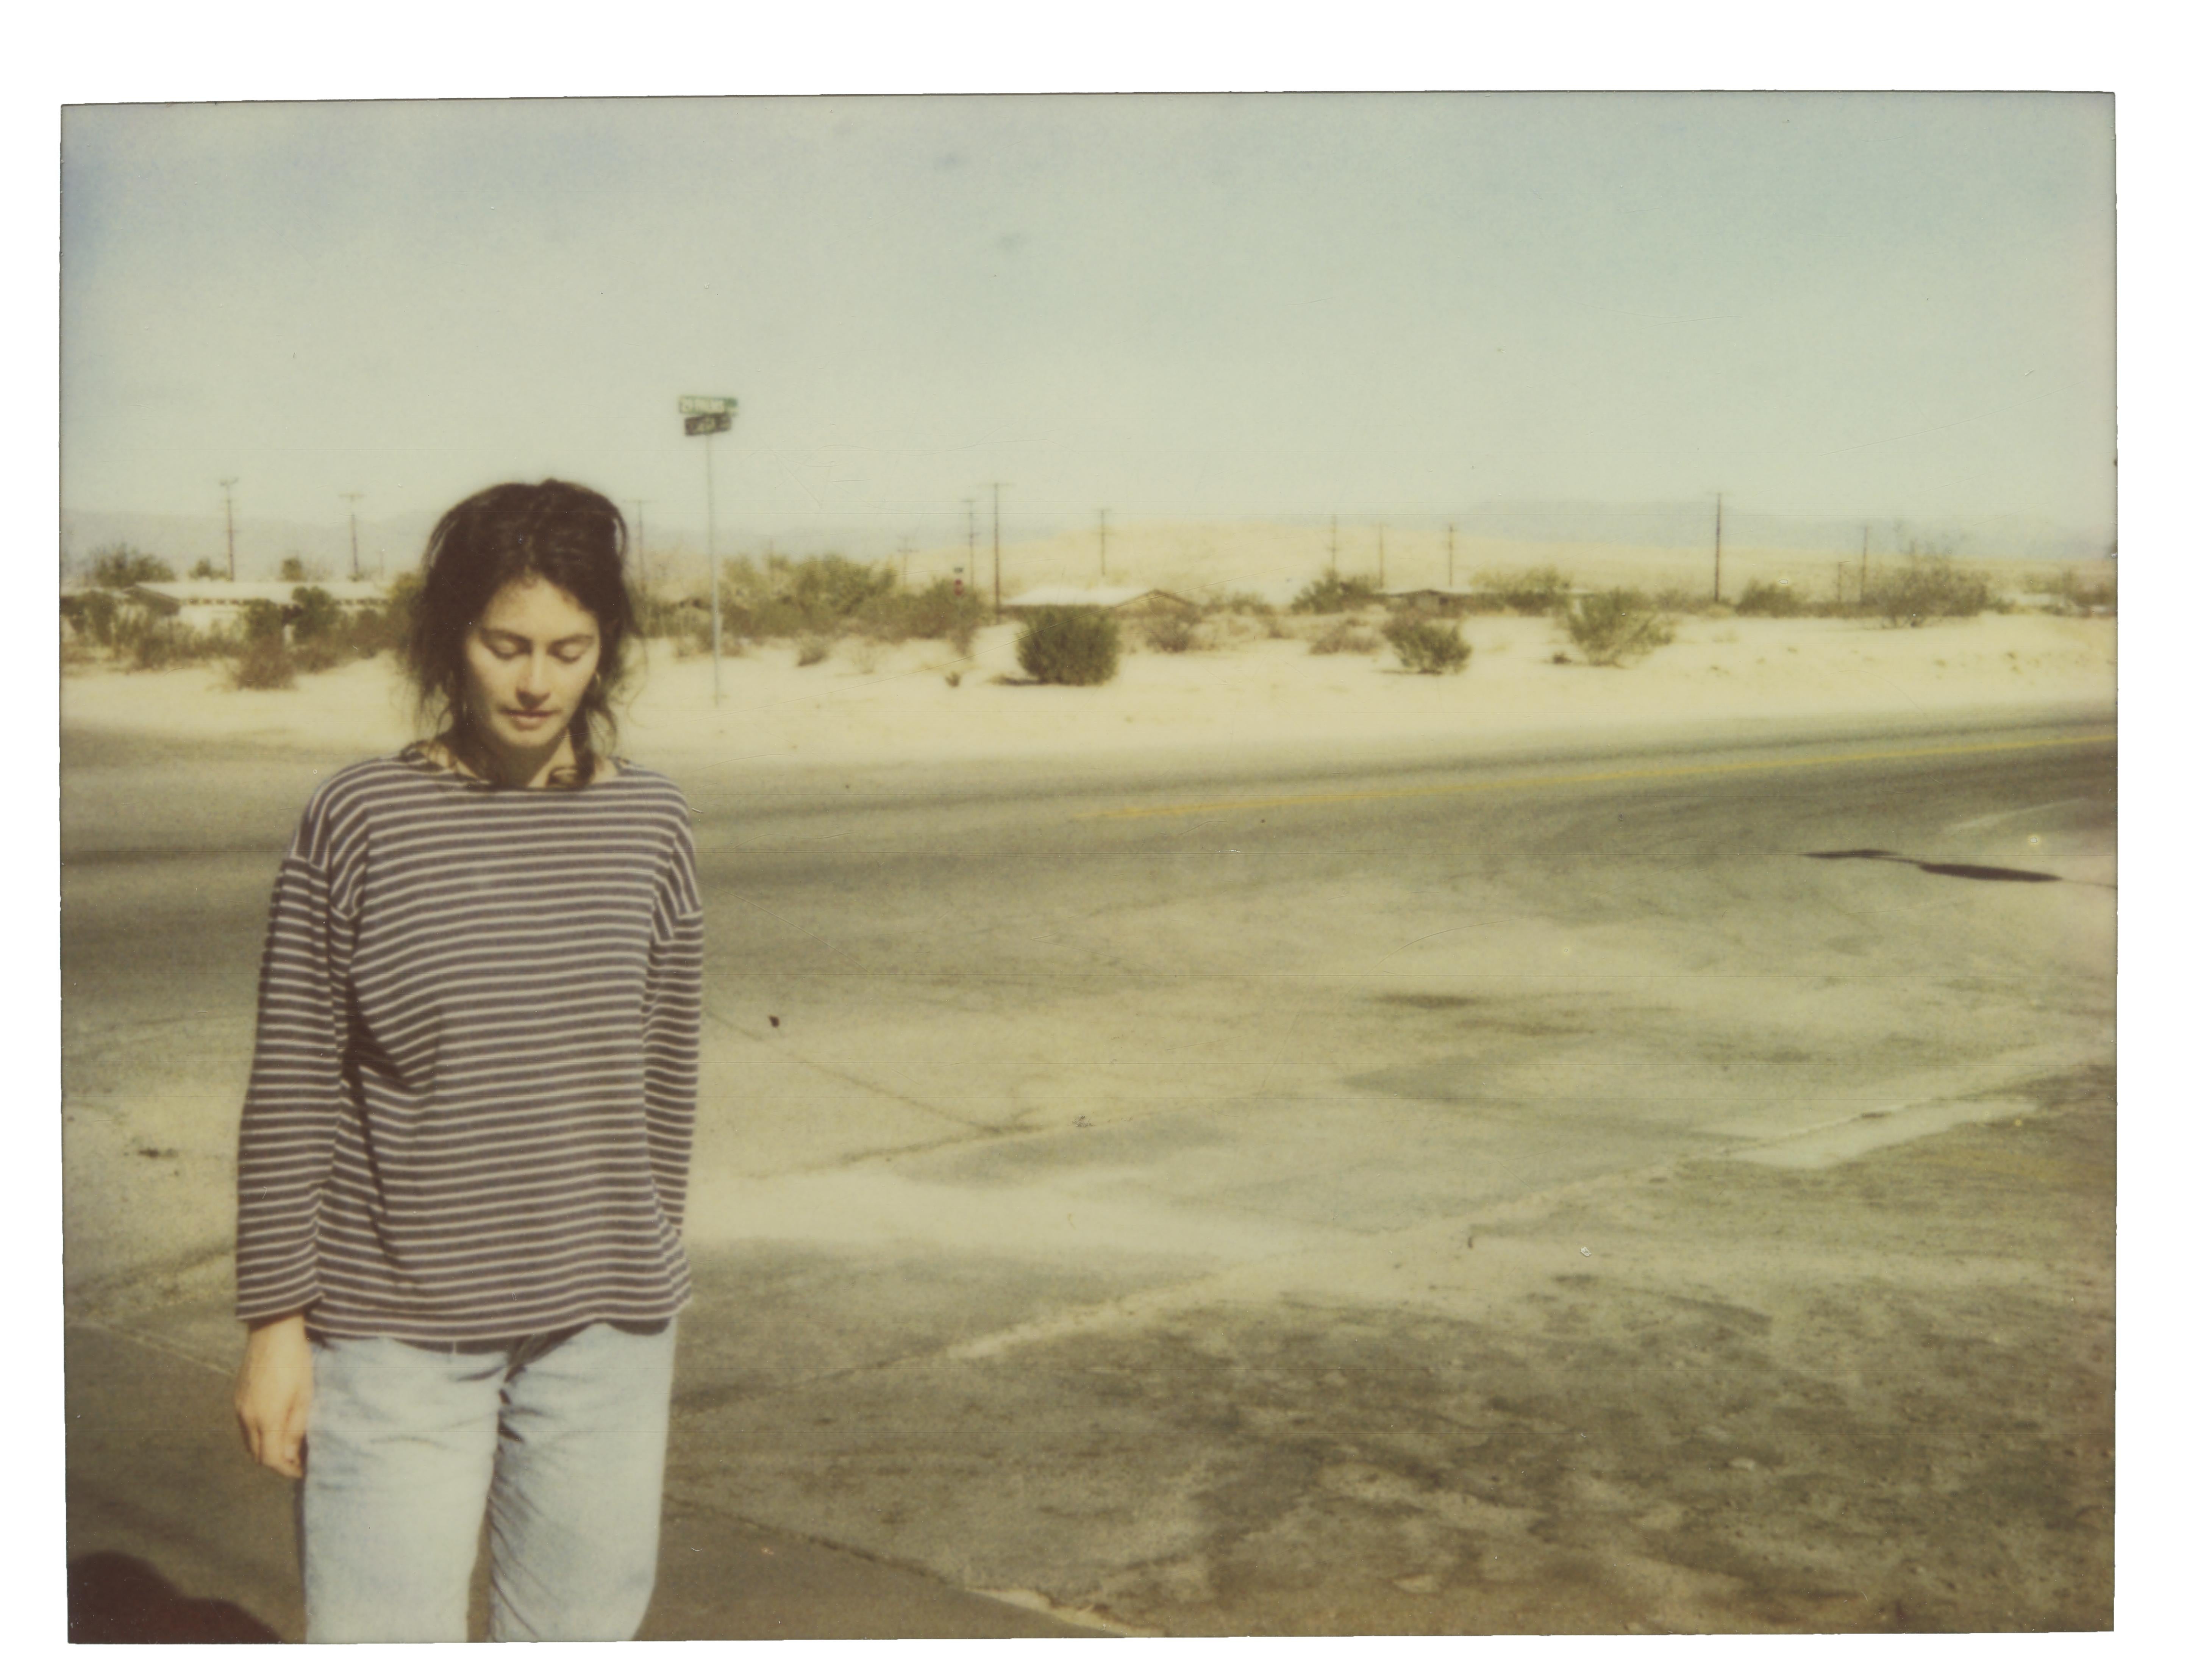 Stefanie Schneider Portrait Photograph - Stefanie on 29 Palms Highway - Spring Sale - 20th Century, Women, Polaroid